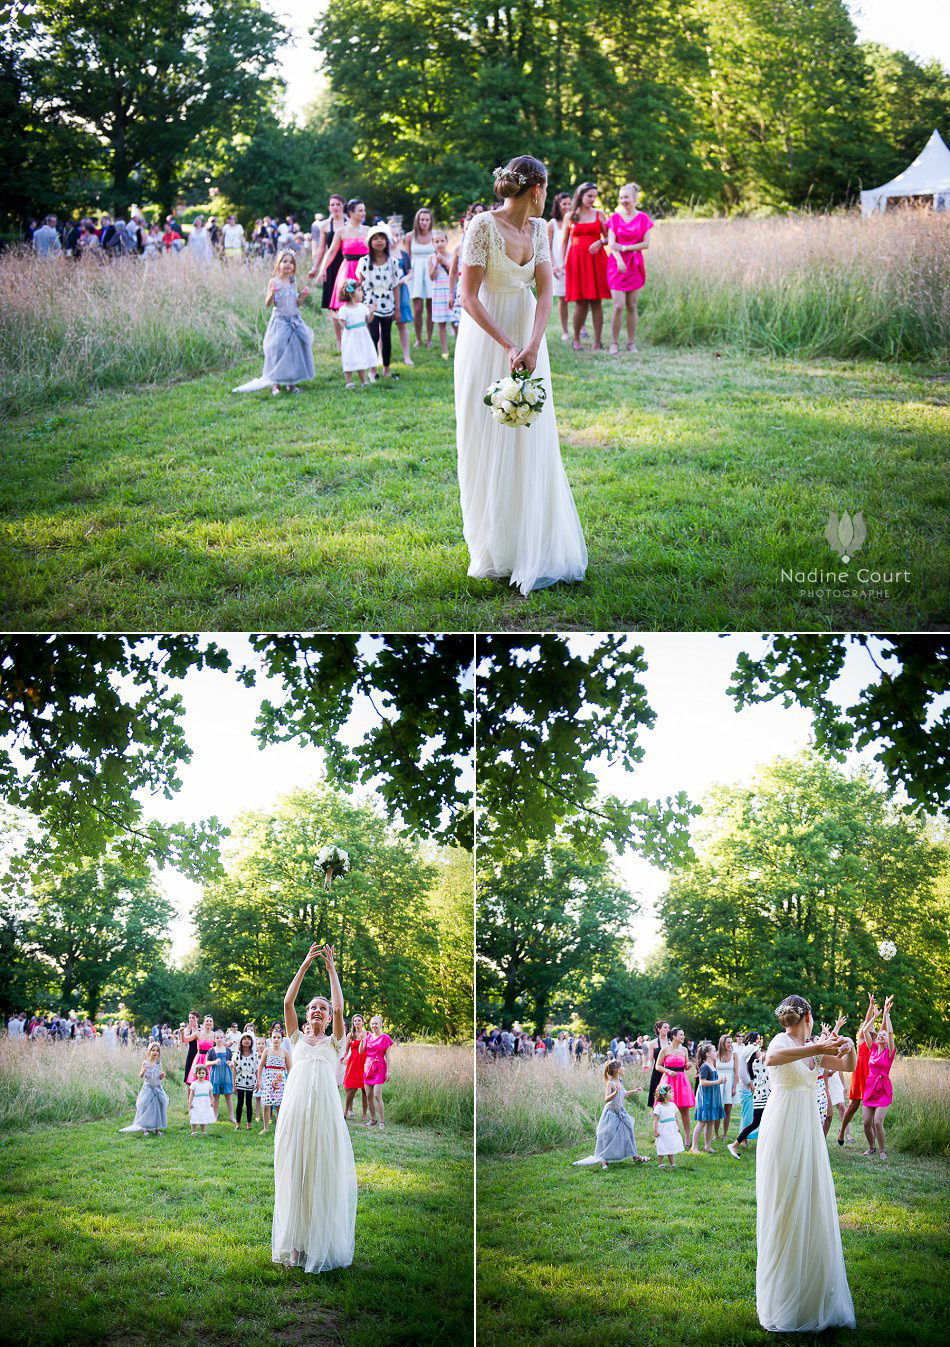 Backyard wedding dans la propriété familiale - lancer de bouquet